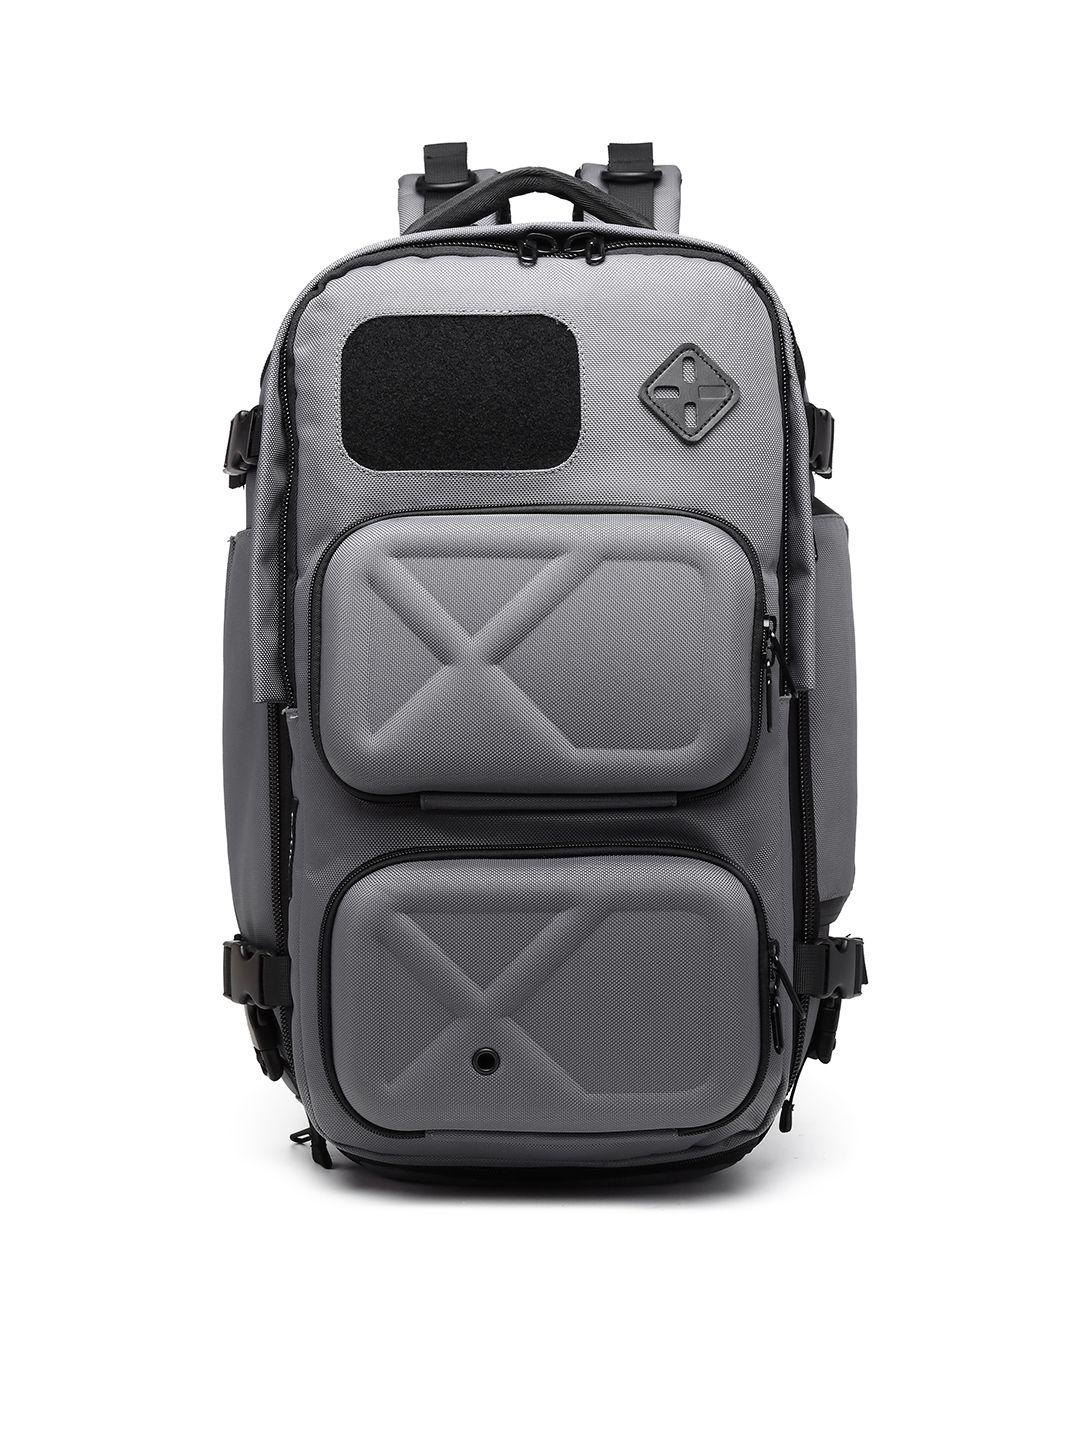 ozuko 9309s range soft case medium backpack